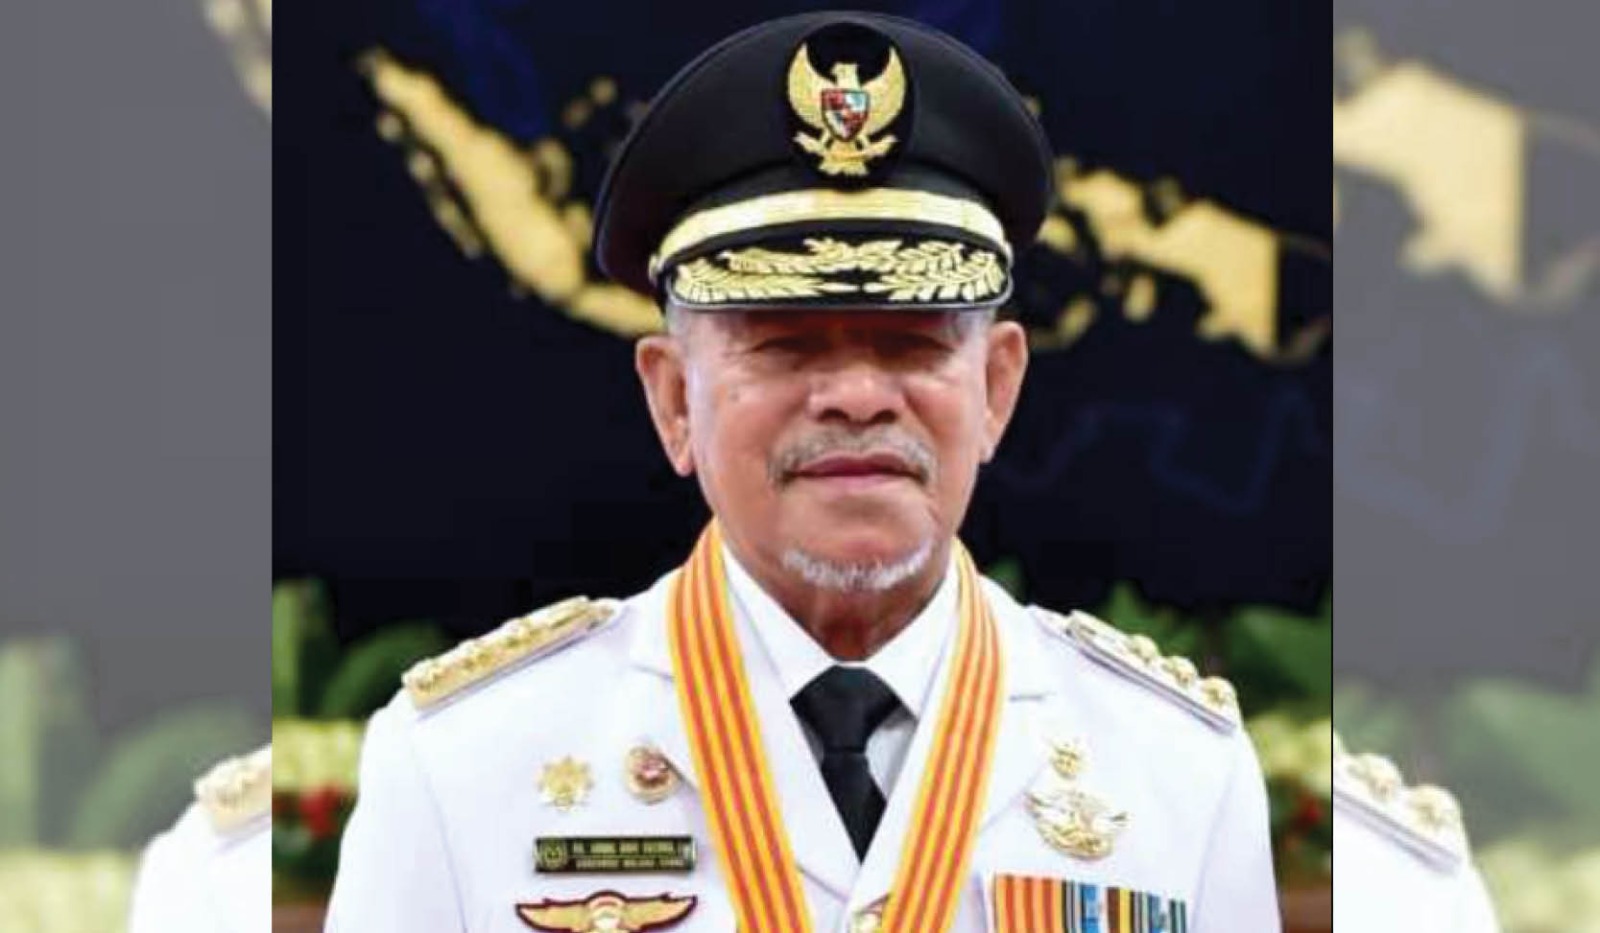 Profil Abdul Gani Kasuba, Gubernur Maluku Utara 2 Periode yang Kena OTT KPK, Hartanya Segini Loh!